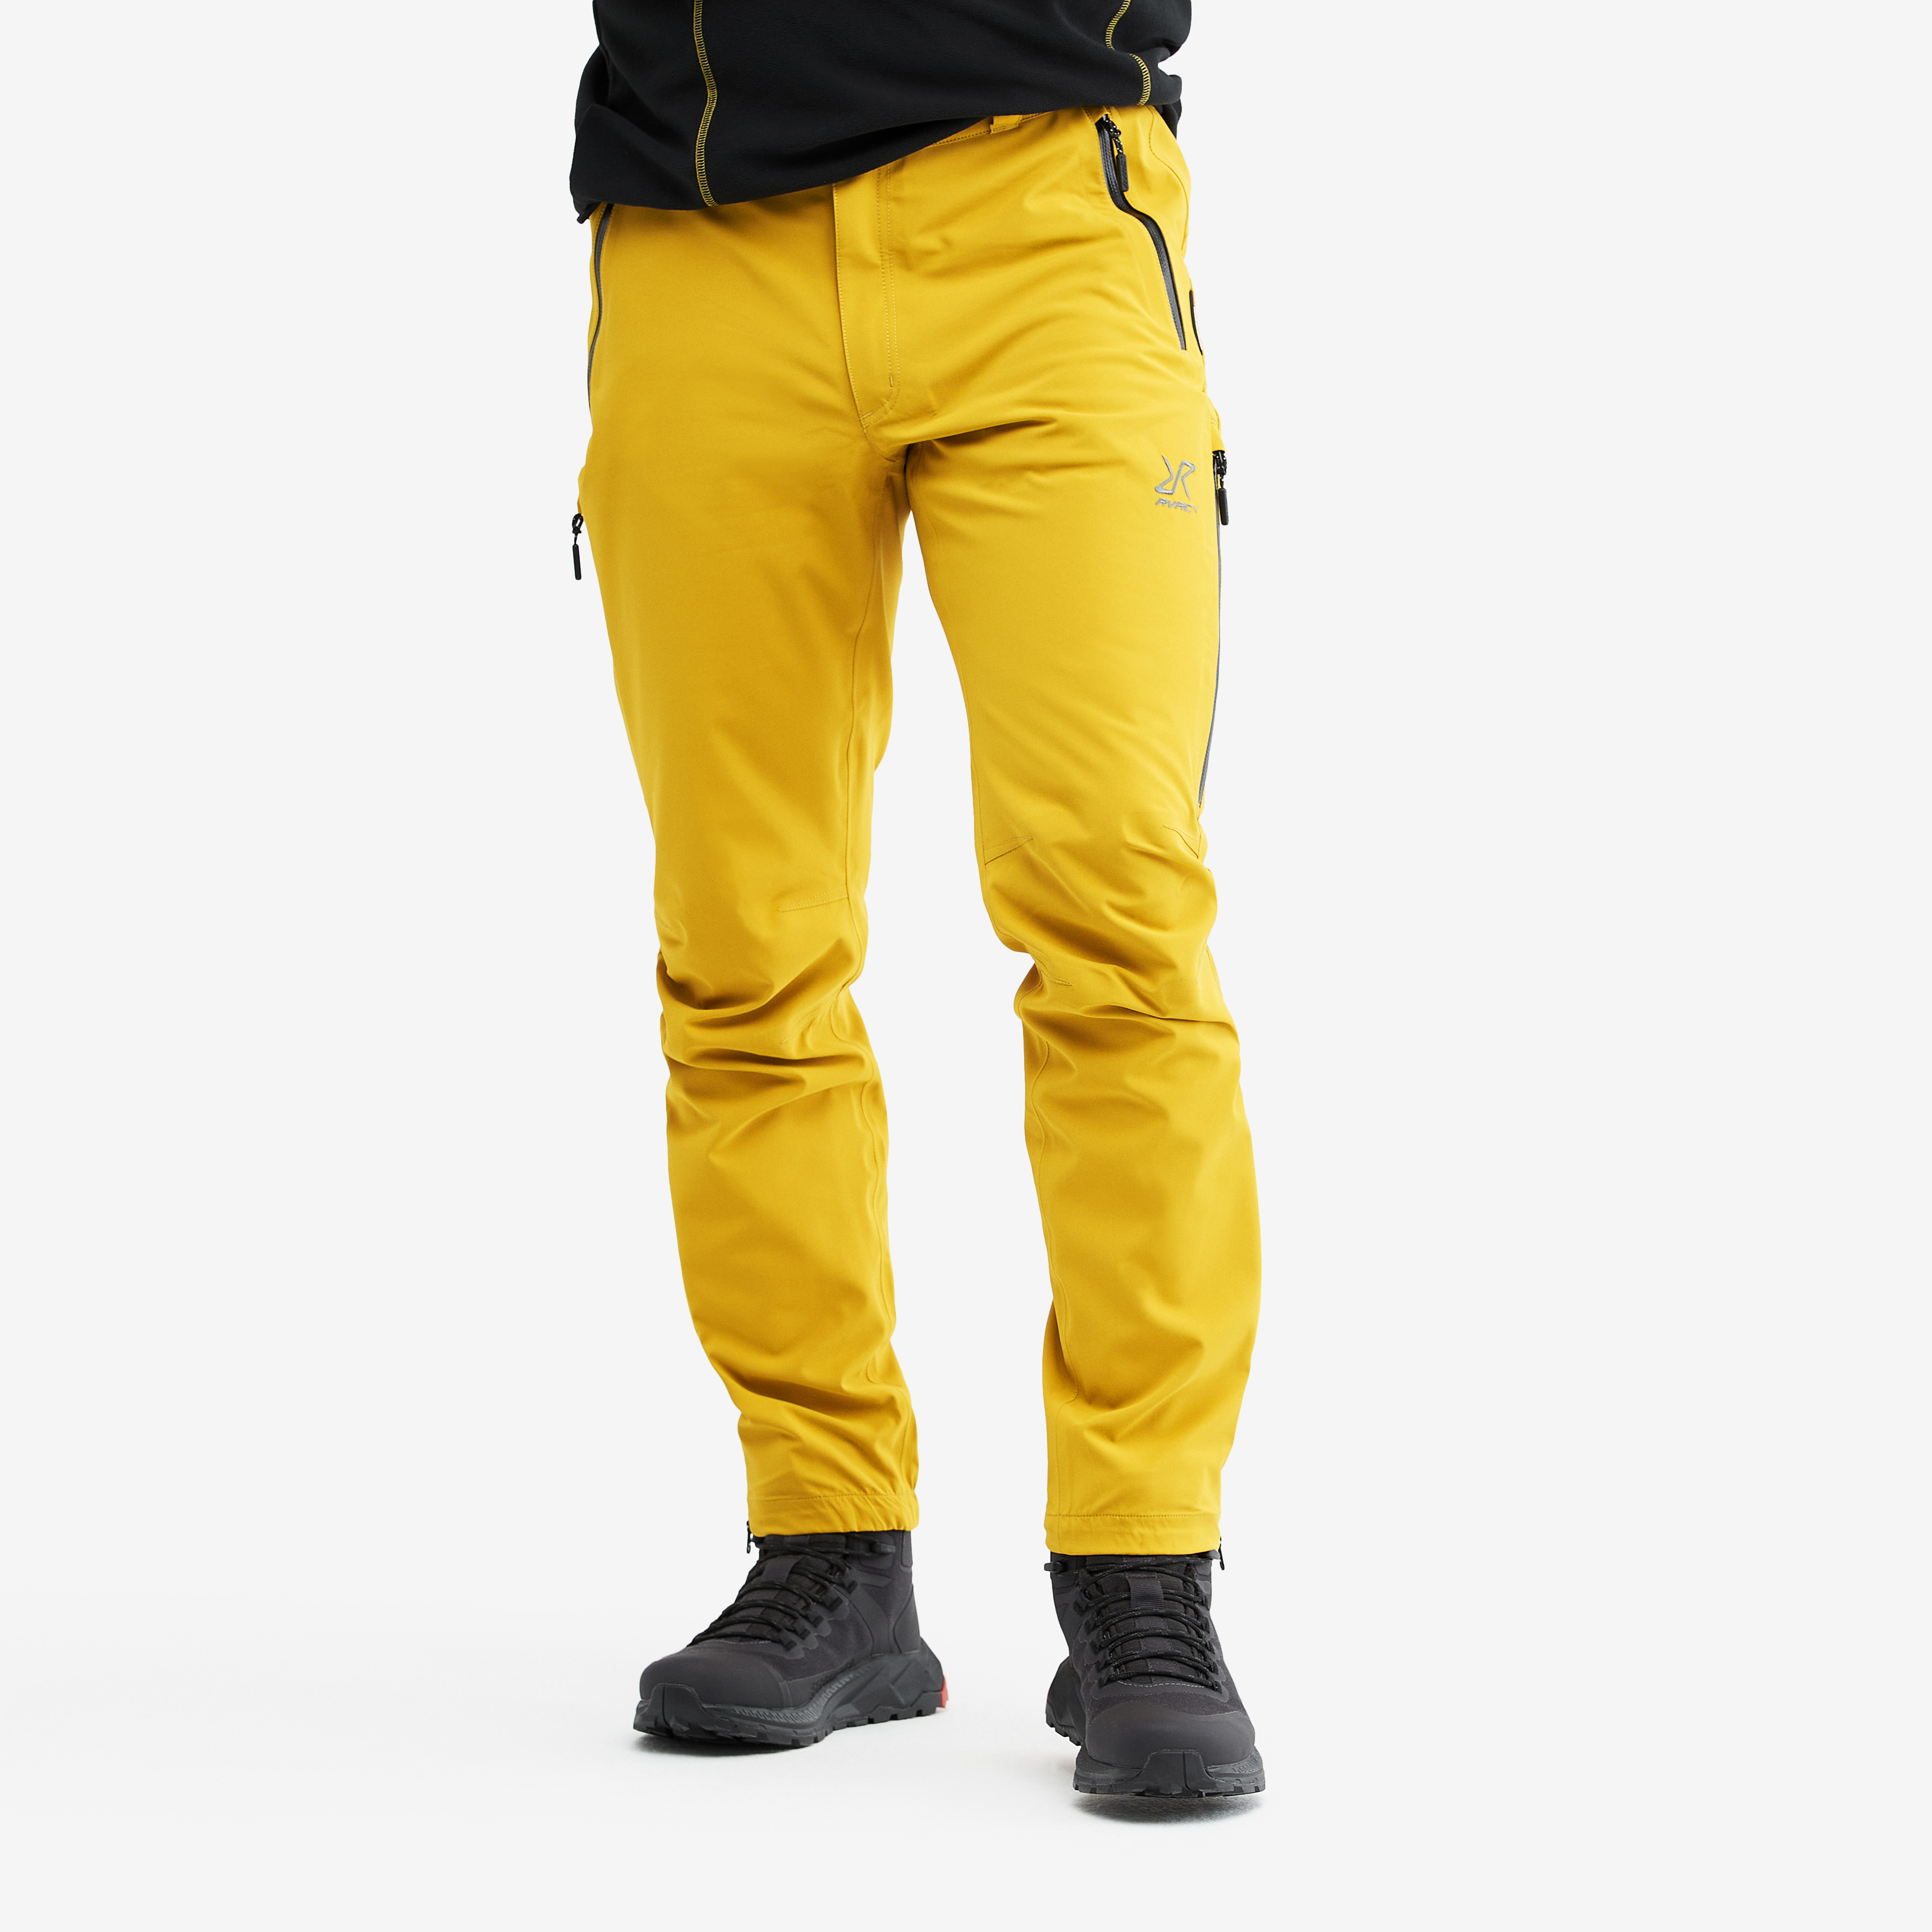 Whisper rain pants for men in yellow